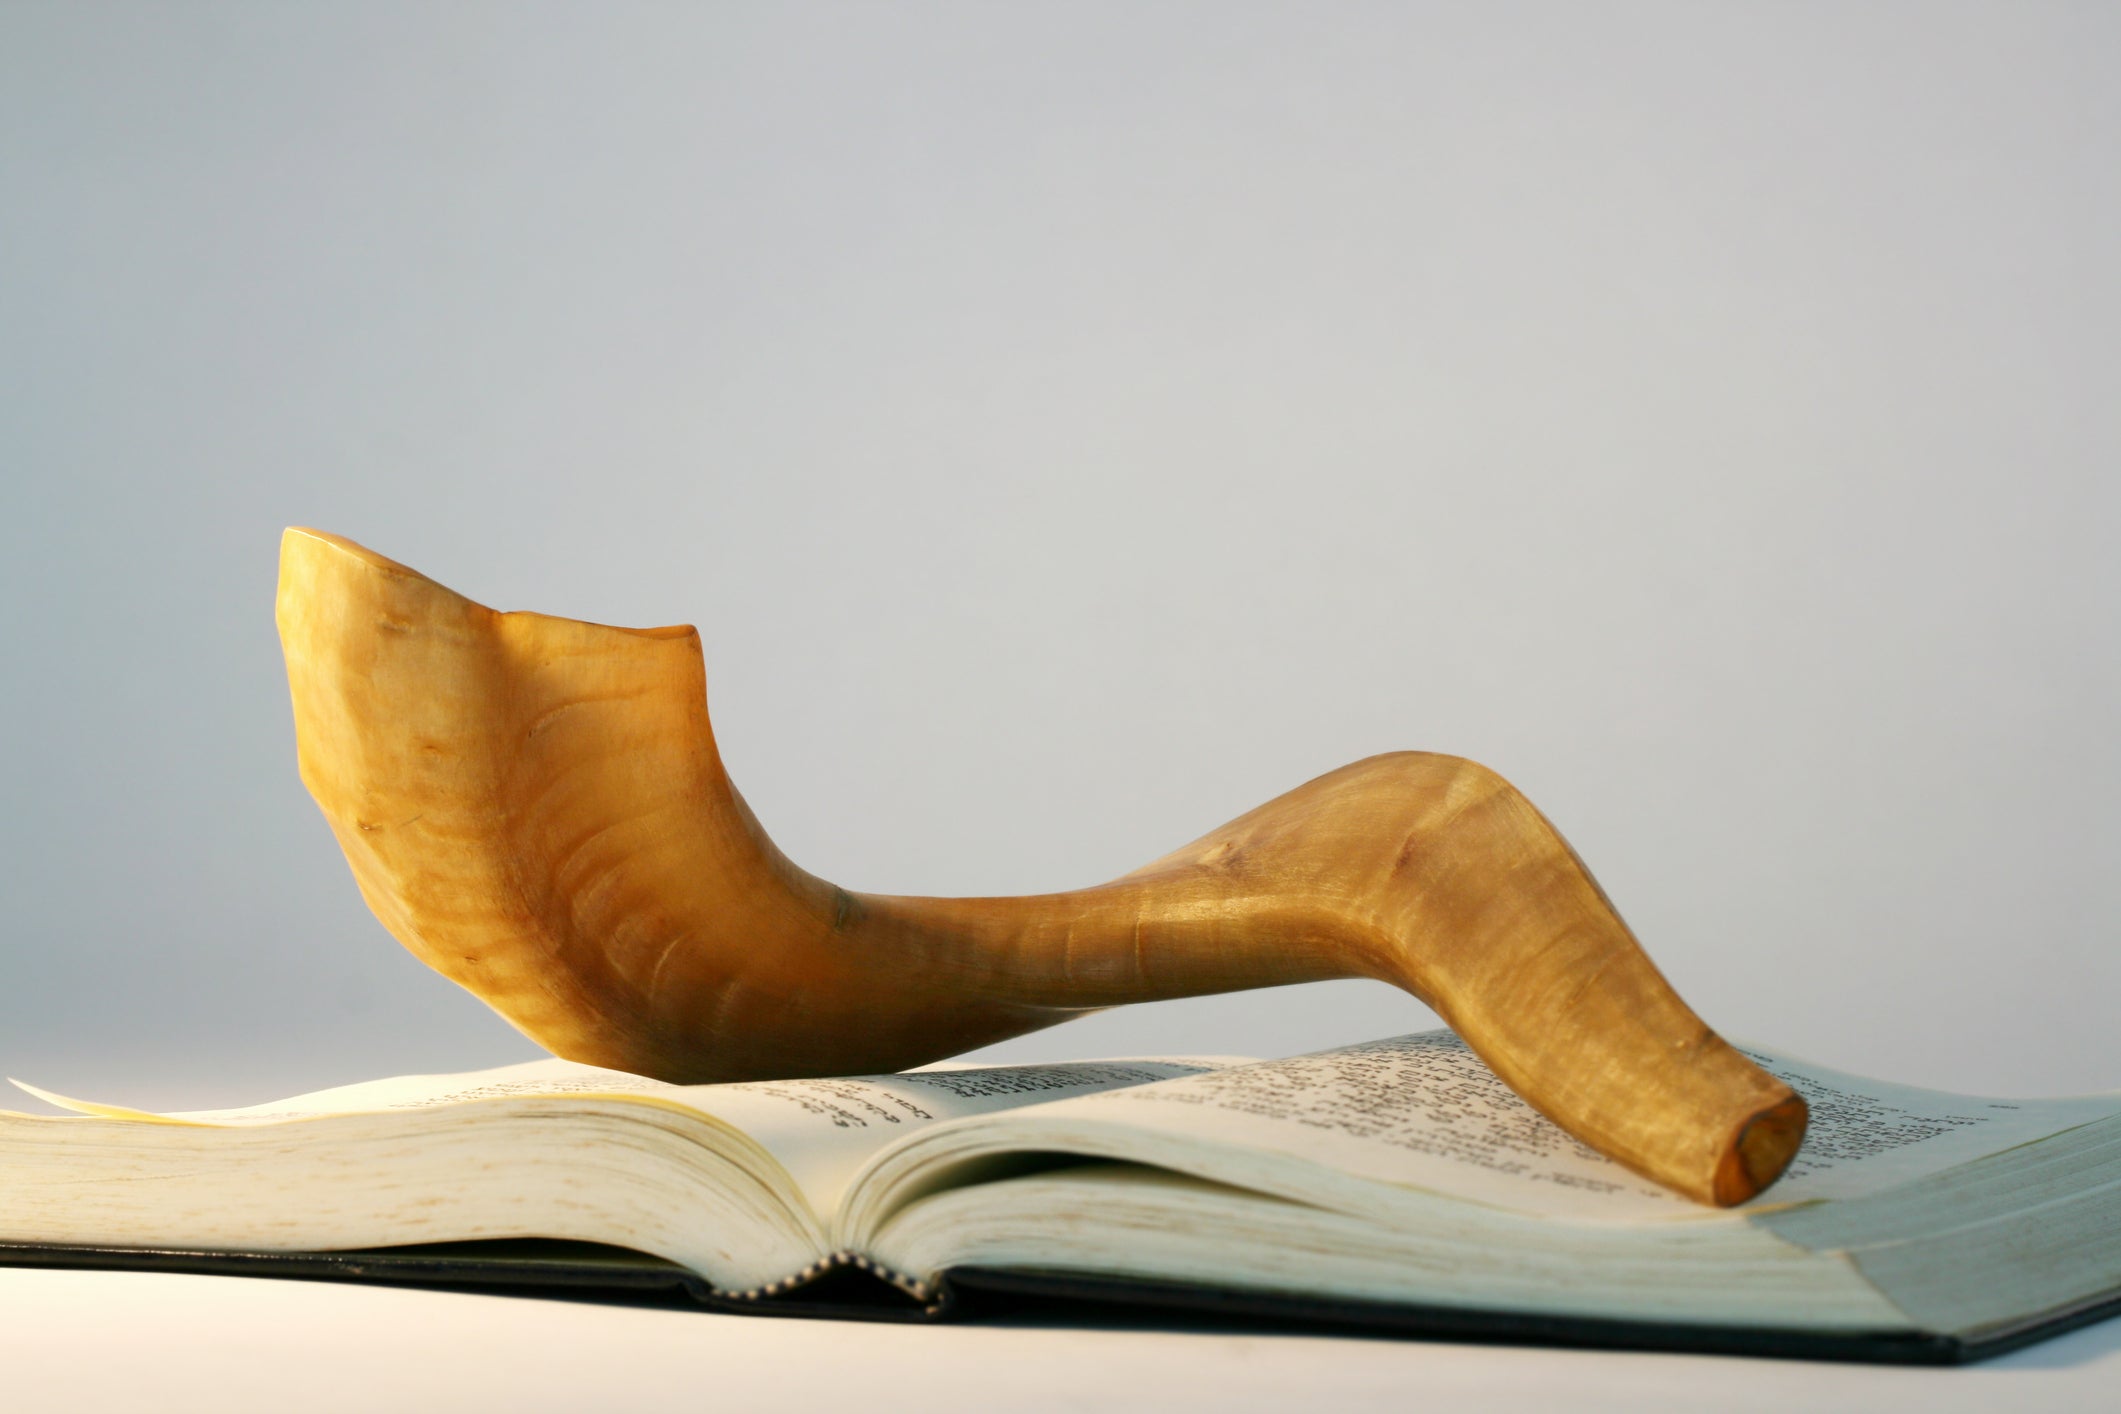 A shofar